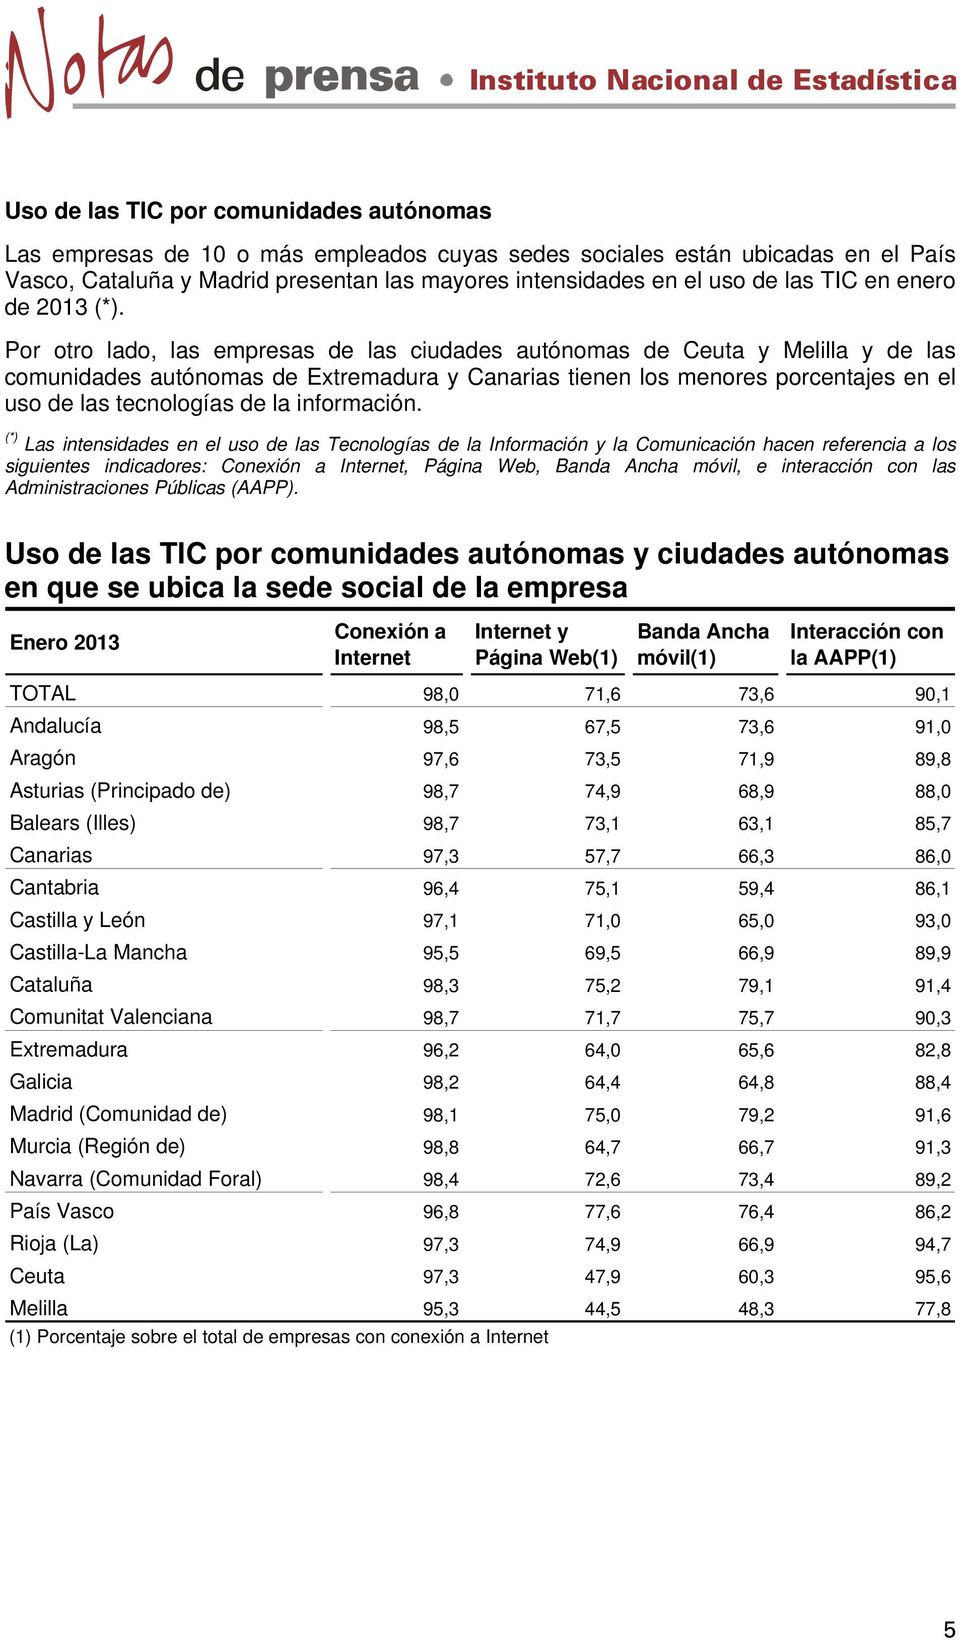 Por otro lado, las empresas de las ciudades autónomas de Ceuta y Melilla y de las comunidades autónomas de Extremadura y Canarias tienen los menores porcentajes en el uso de las tecnologías de la